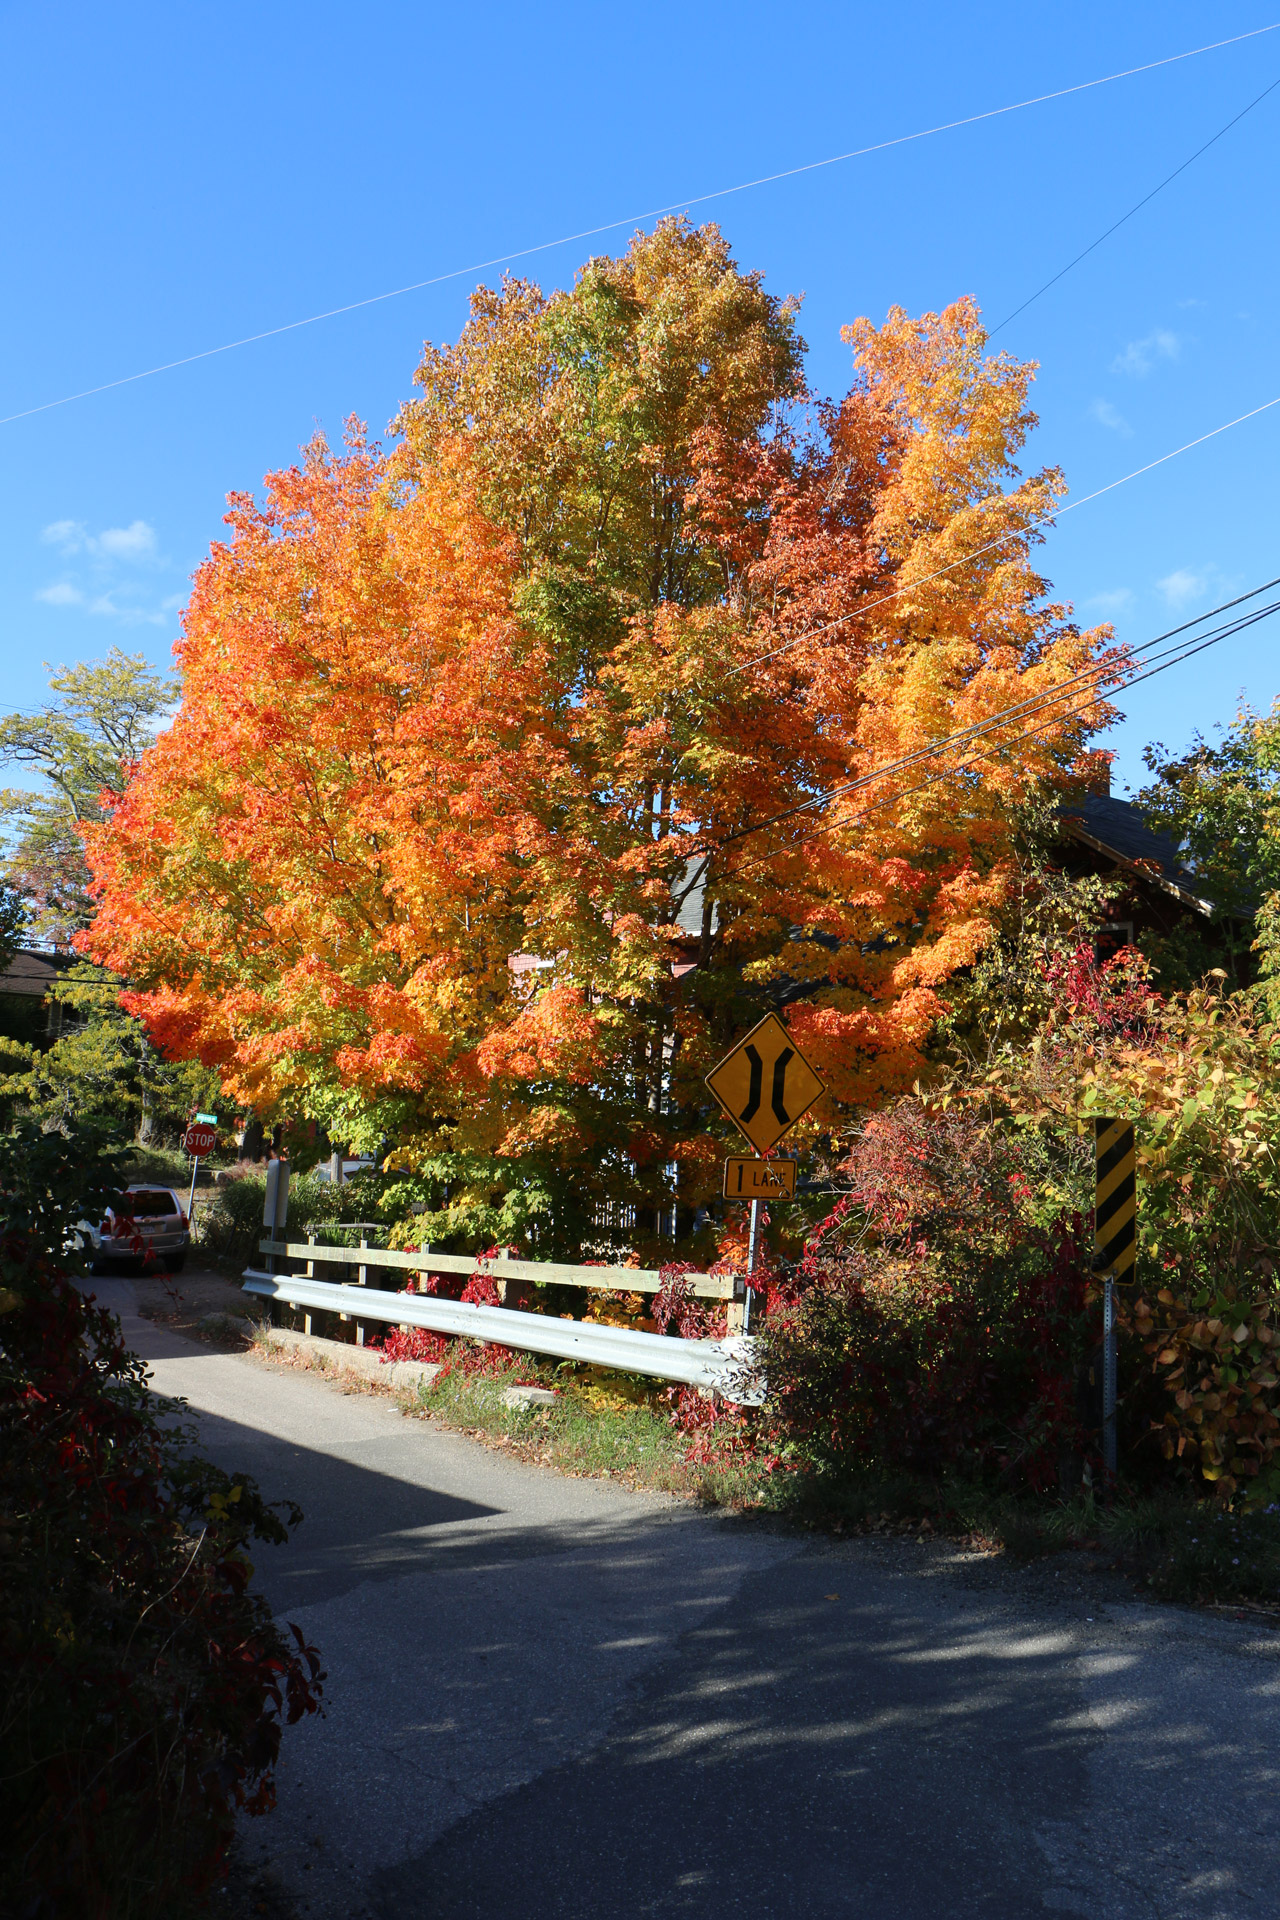 Fall Tree & Bridge